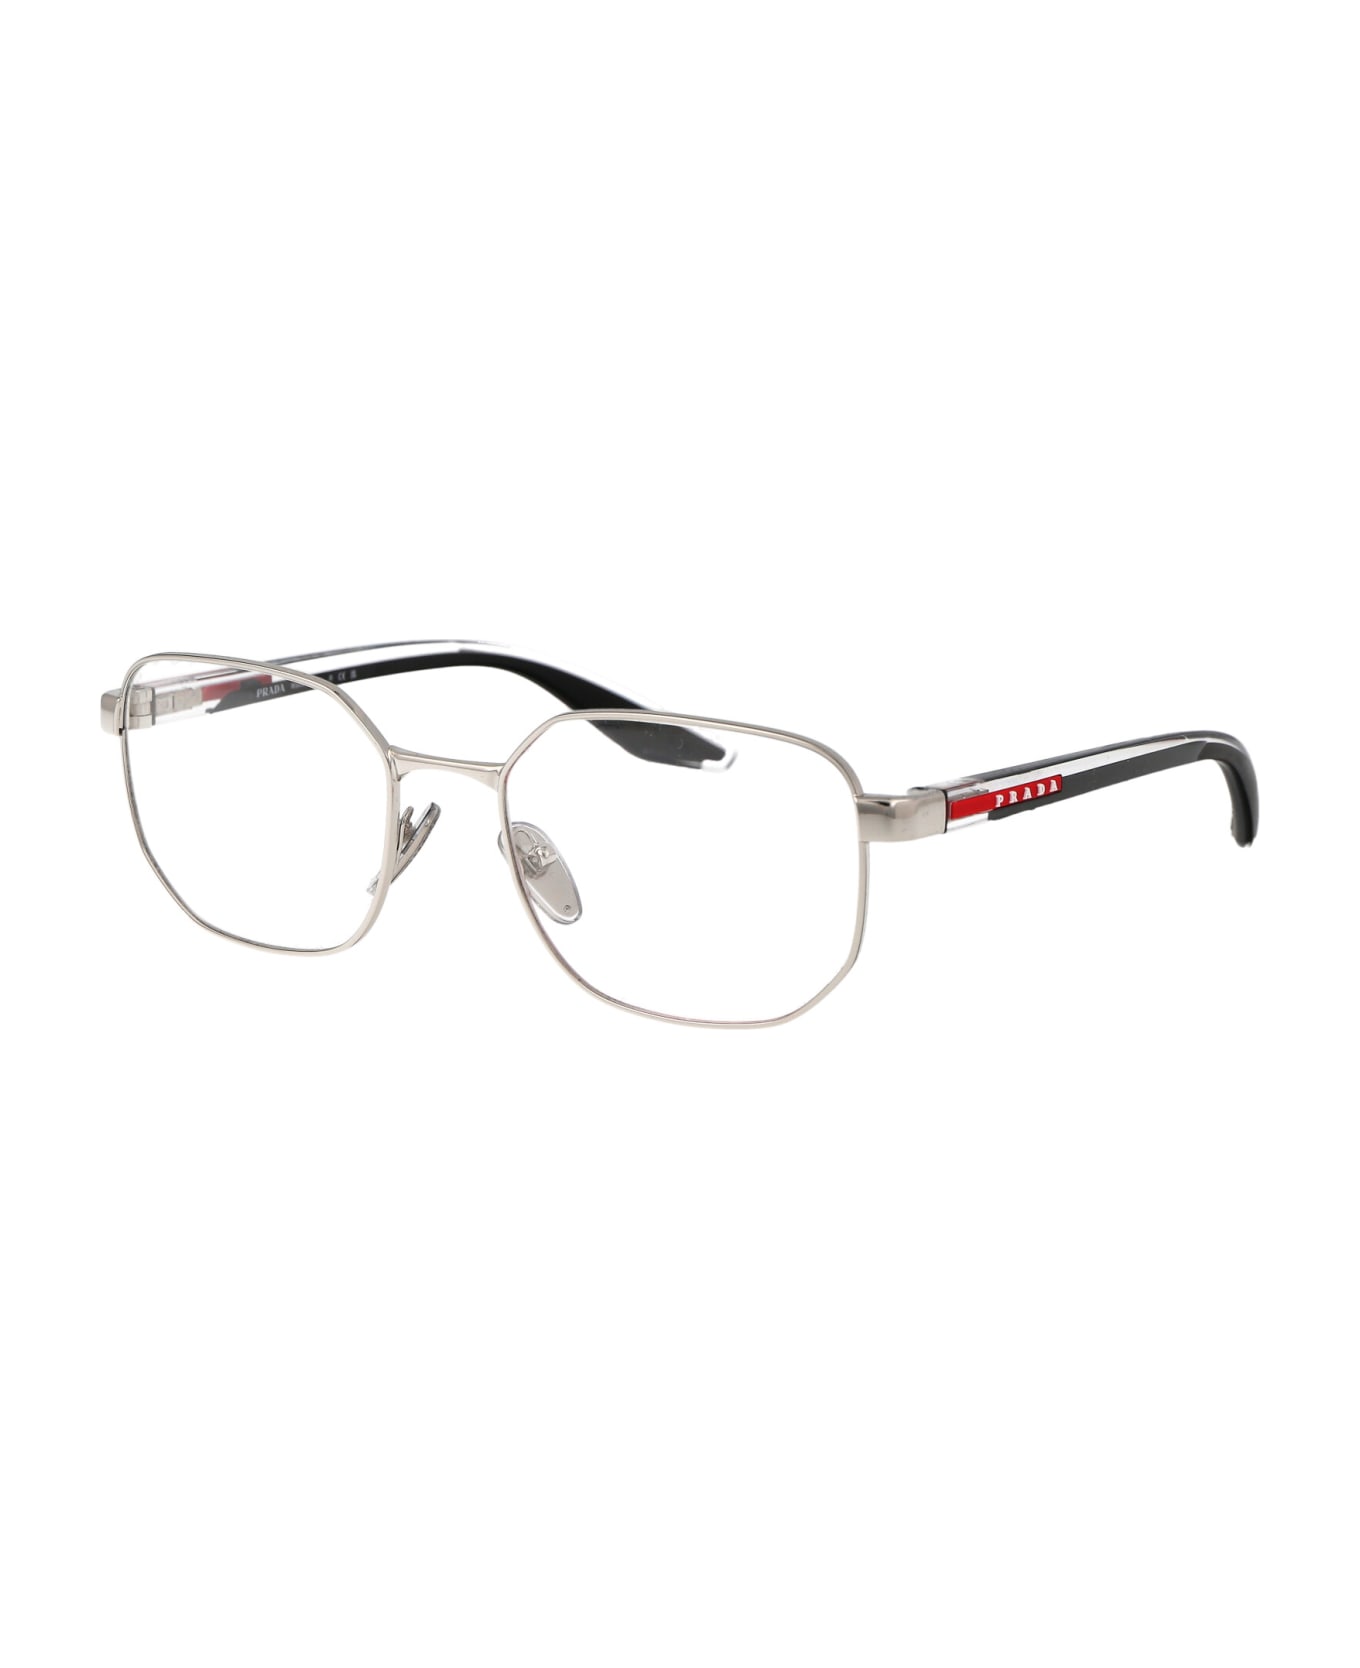 Prada Linea Rossa 0ps 50qv Glasses - 1BC1O1 SILVER